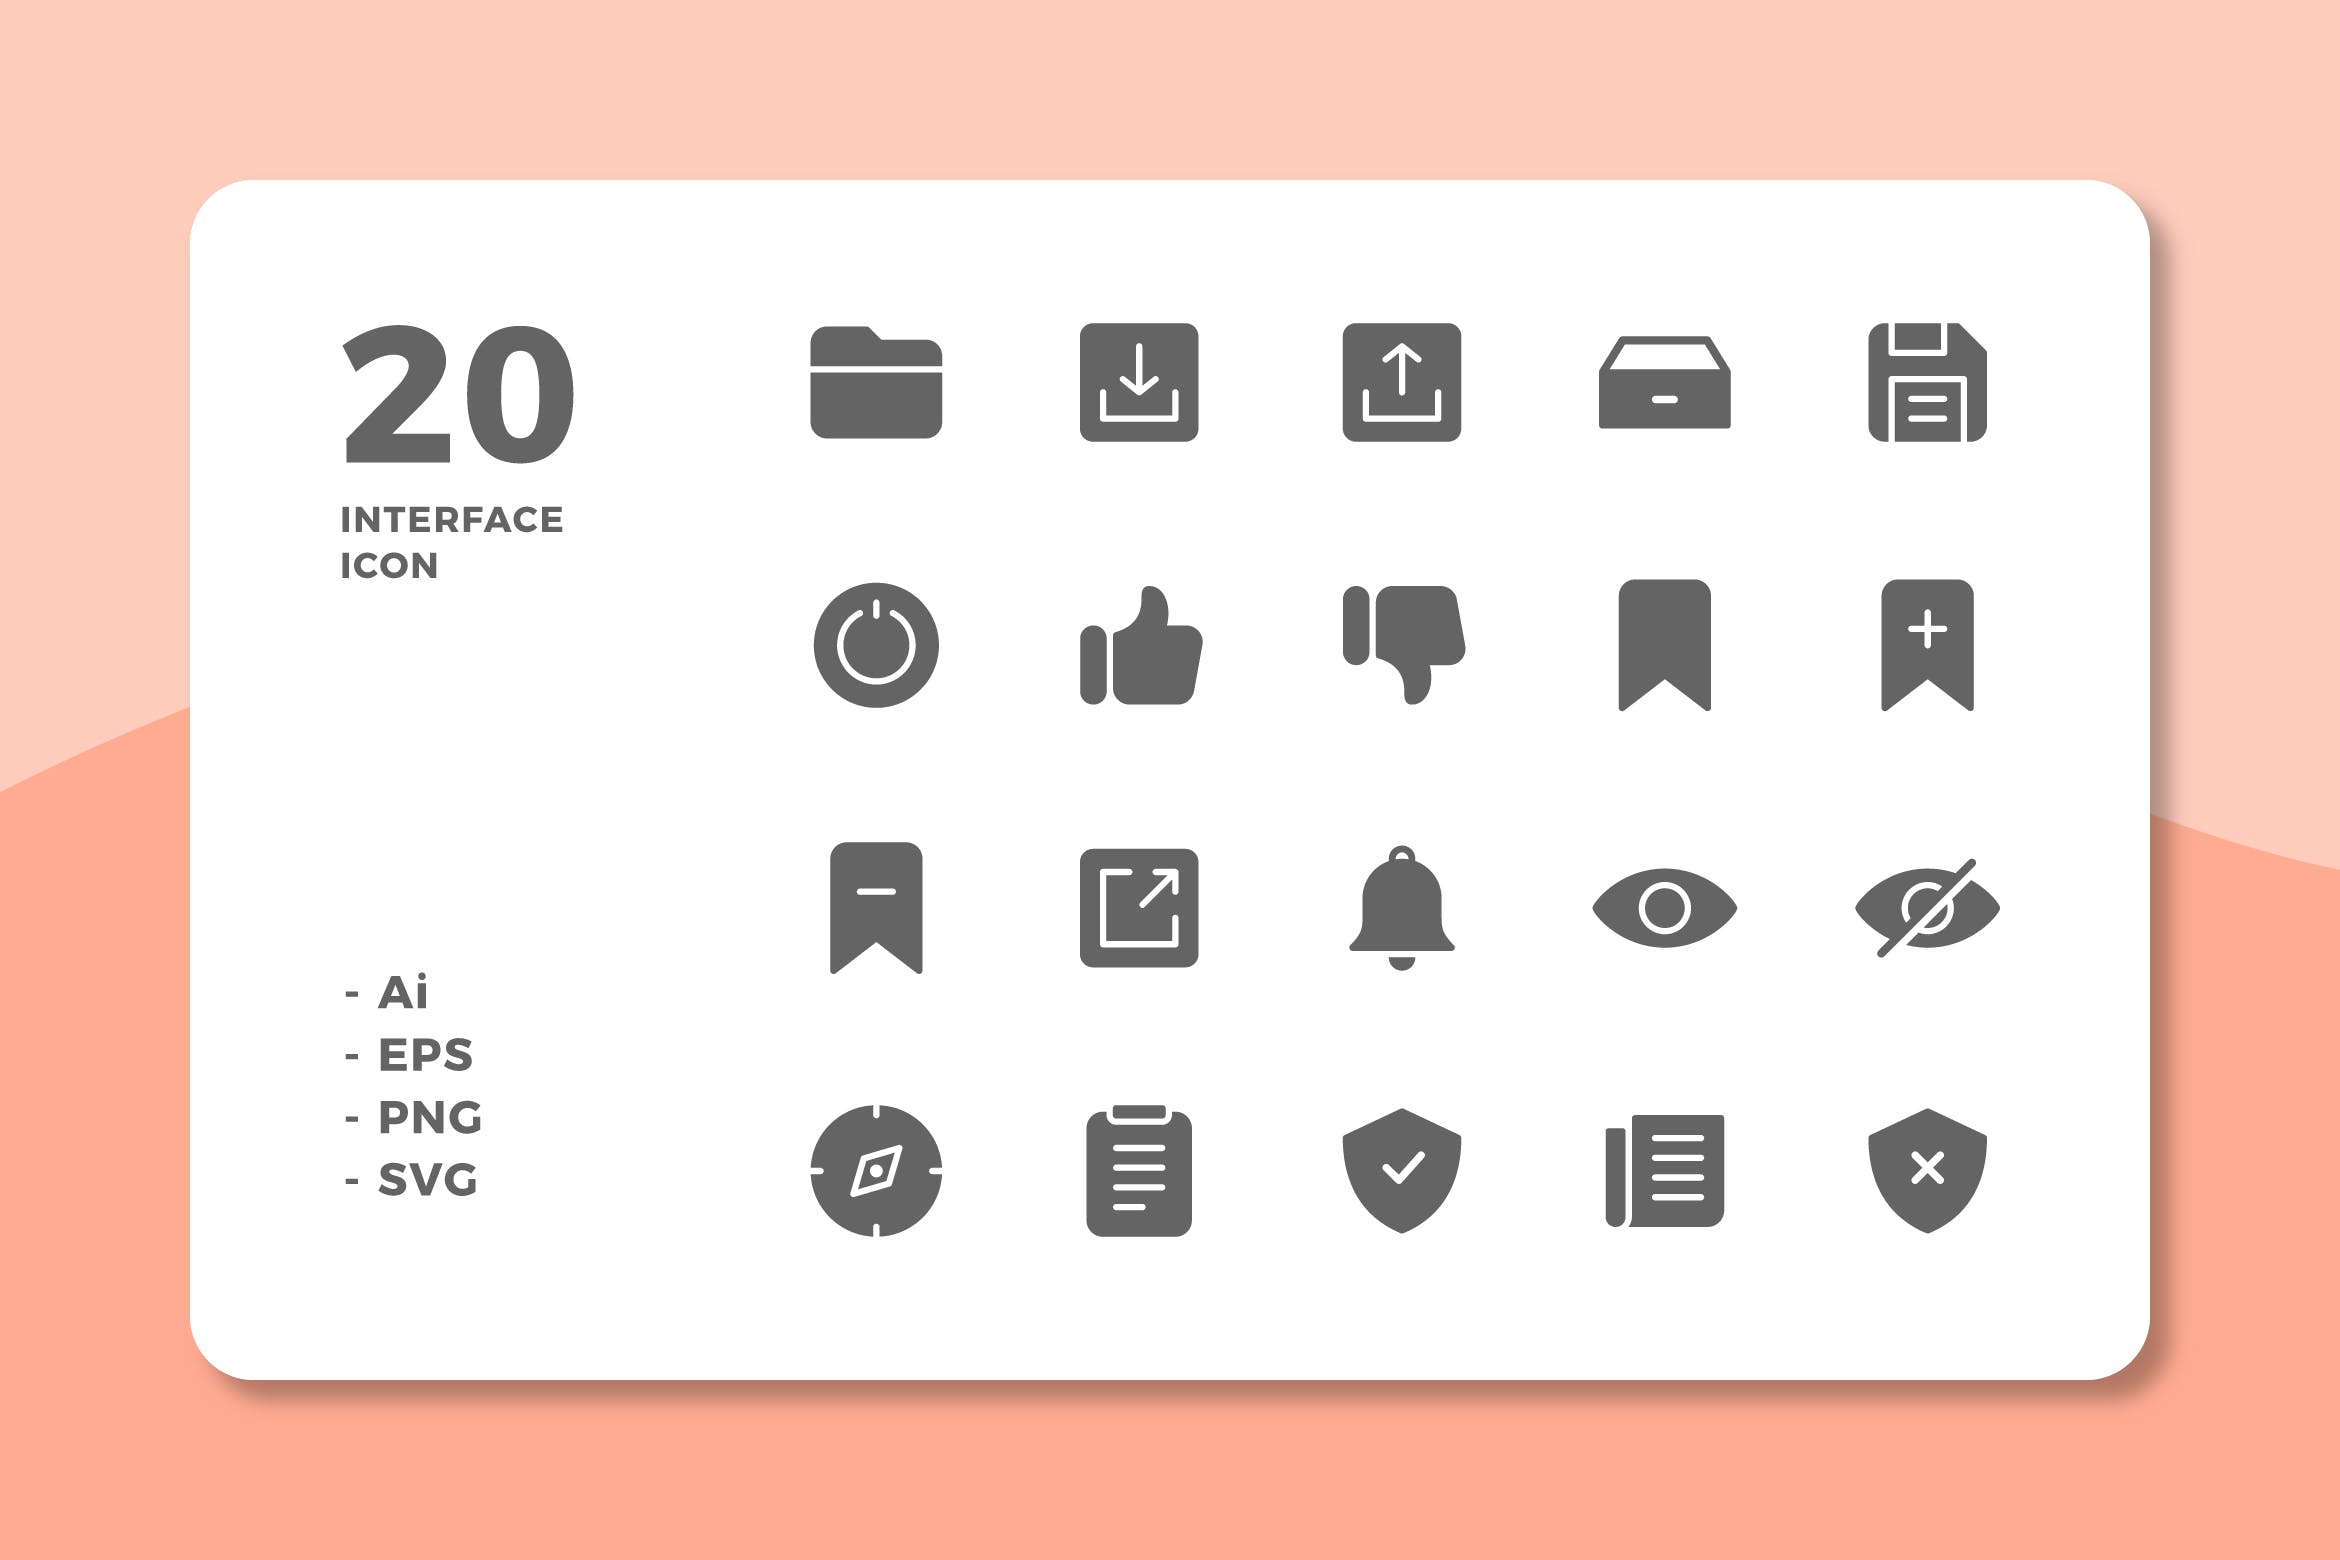 20枚UI界面设计APP操作选项蚂蚁素材精选图标v3 20 Interface Icons Vol.3 (Solid)插图